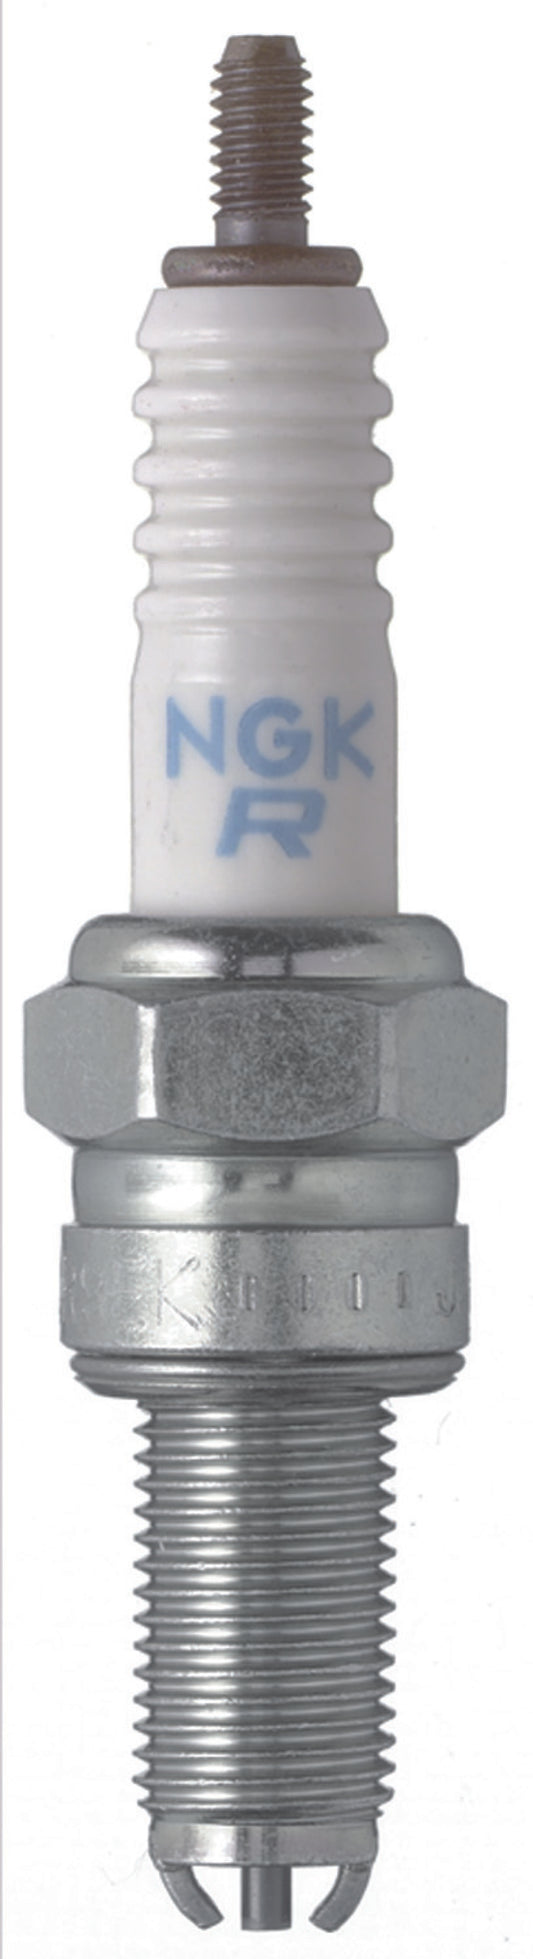 NGK Standard Spark Plug Box of 10 (CR7EK)